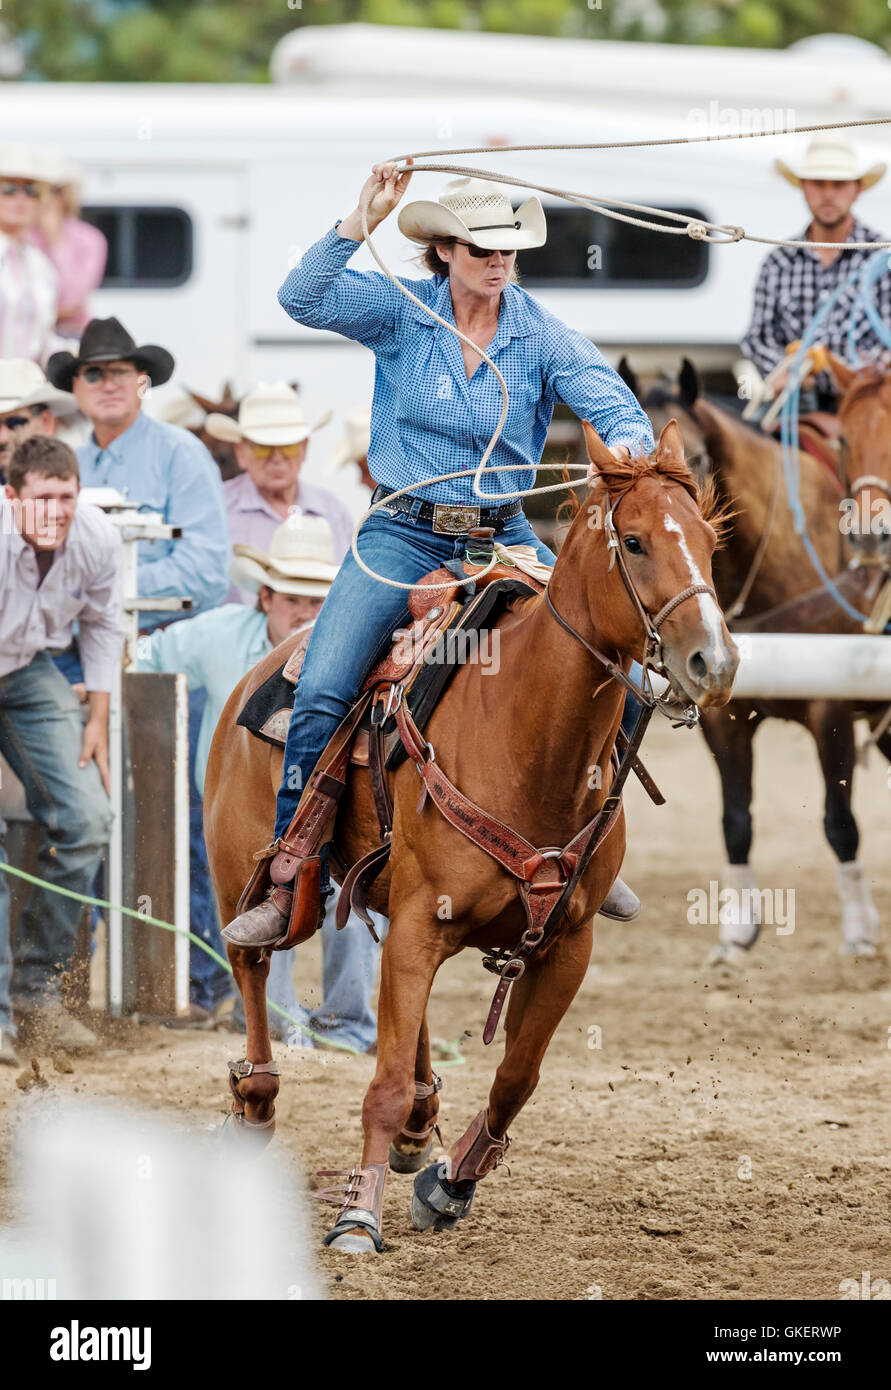 Rodeo cowgirl a cavallo in competizione in vitello, funi o tie-down roping evento, Chaffee County Fair & Rodeo, Salida, Colorado, STATI UNITI D'AMERICA Foto Stock